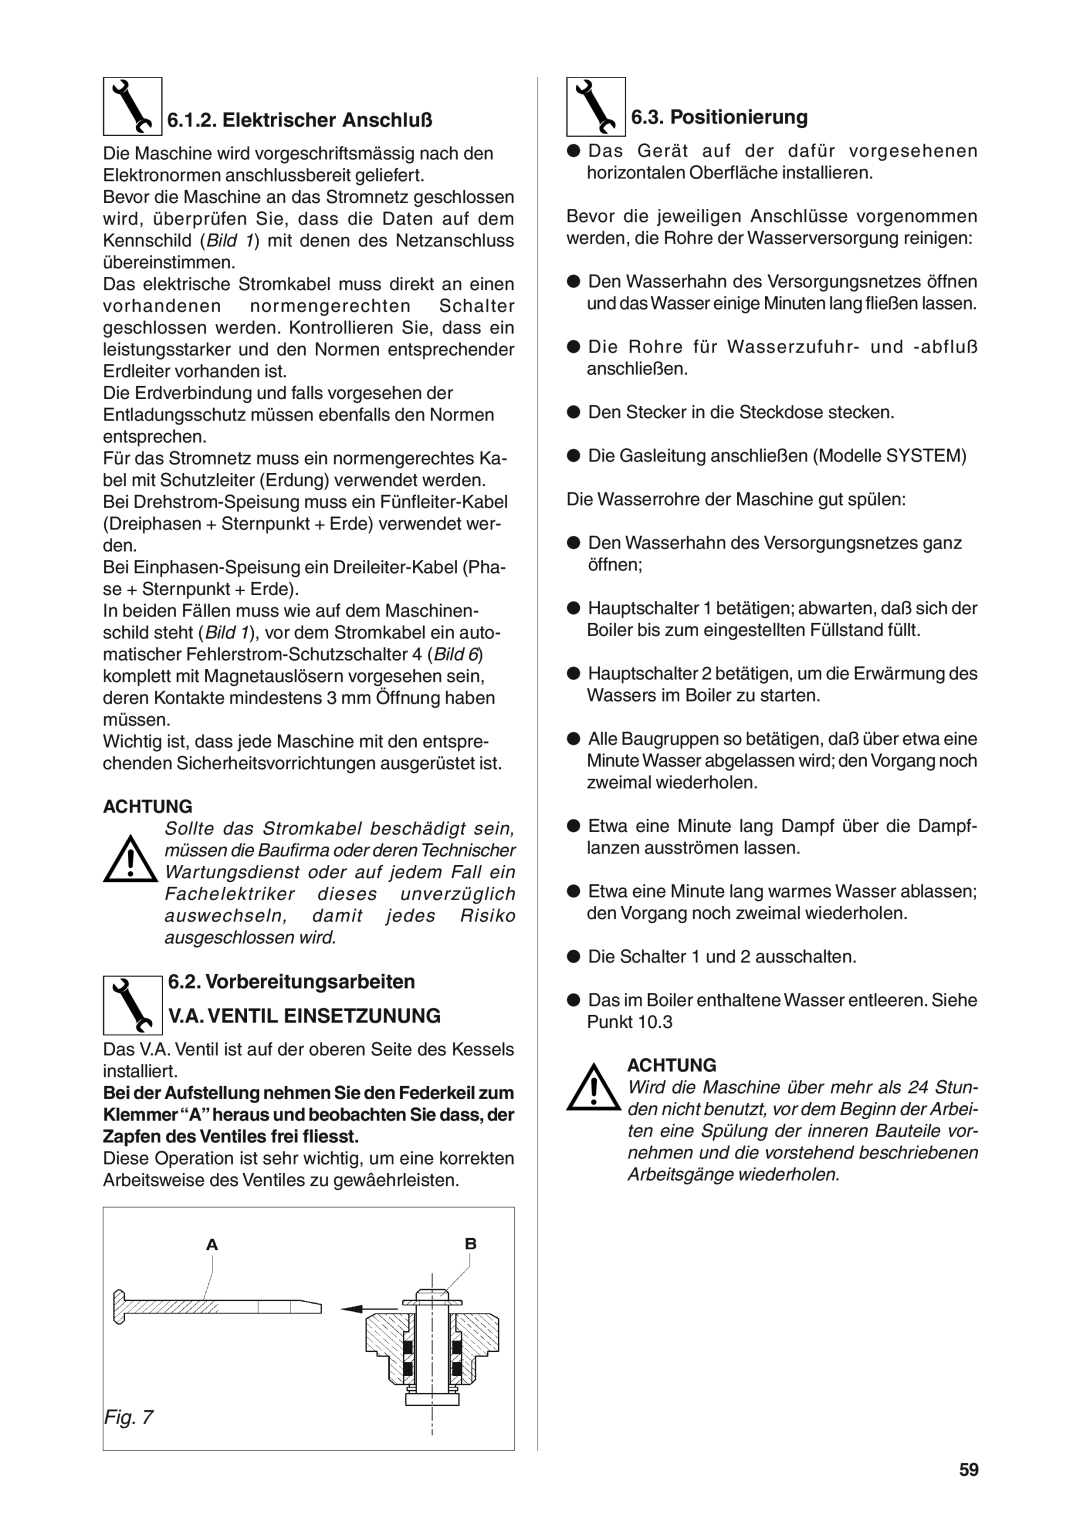 Rancilio S20 manual Elektrischer Anschluß, Vorbereitungsarbeiten V.A. VENTIL EINSETZUNUNG, Positionierung 